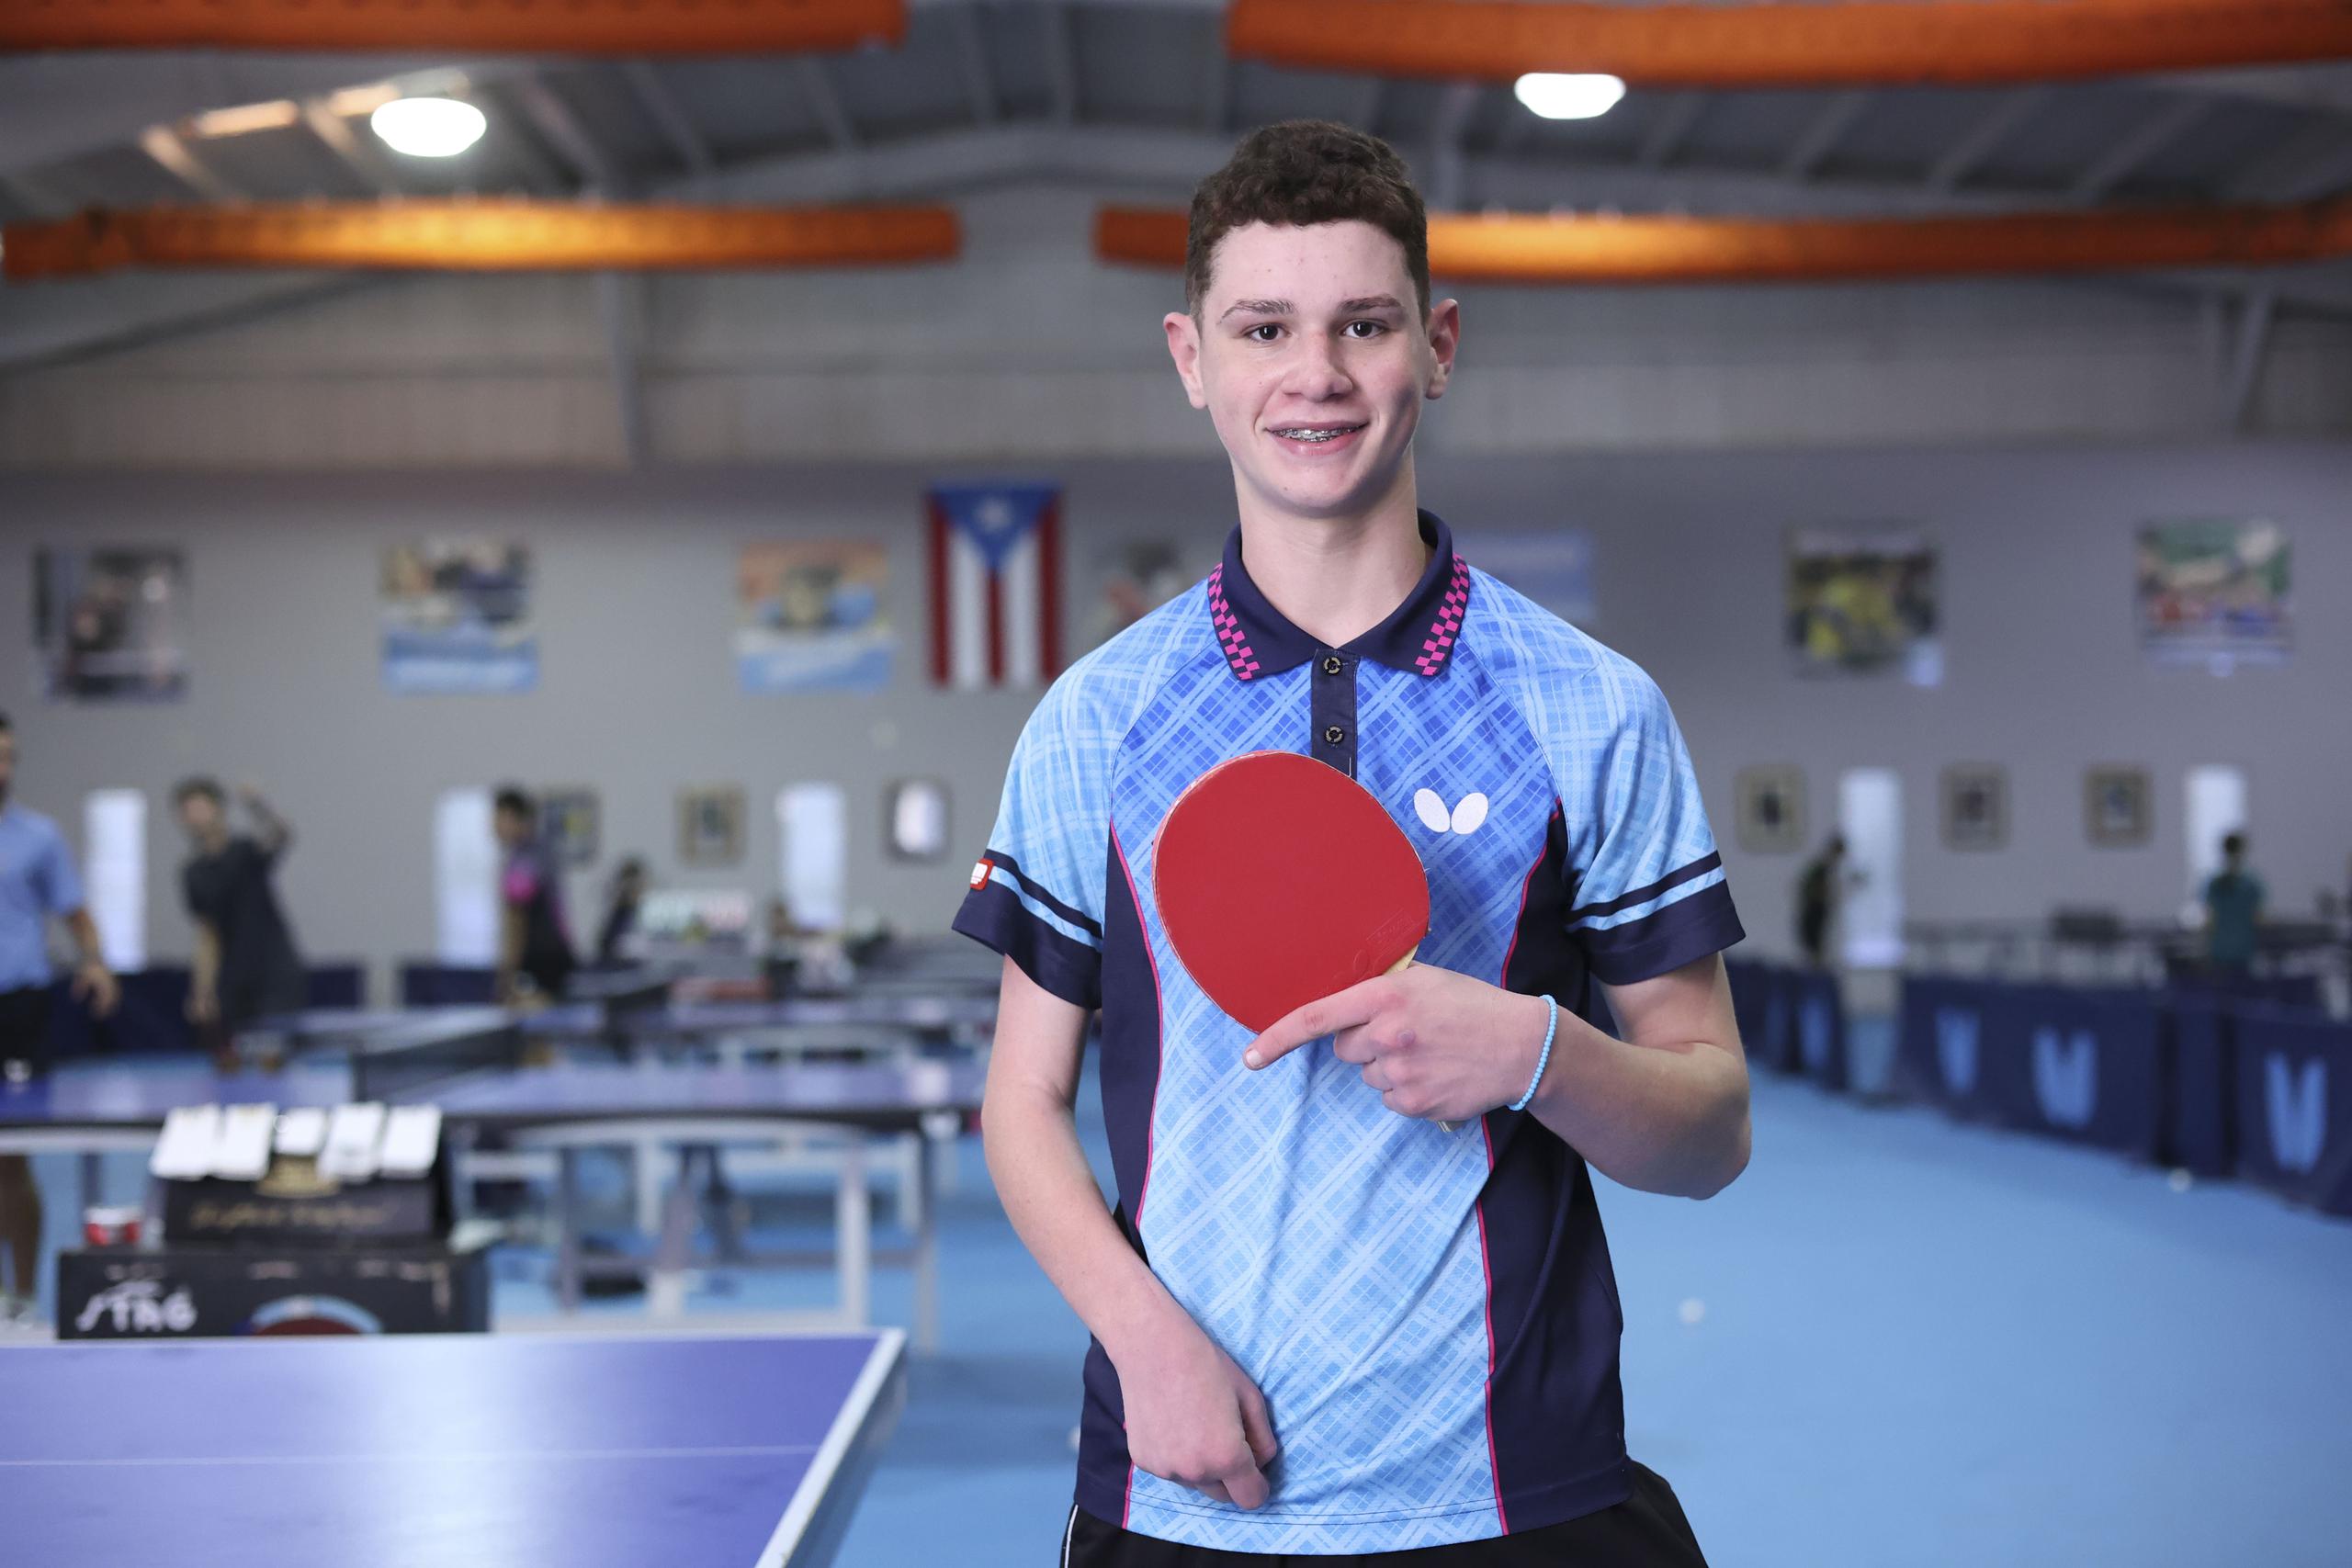 El primer deporte de Jeriel López Vélez es el tenis de mesa y si tiene que escoger uno de los dos para competir en los Parapanamericanos, ese será el tenis de mesa.

